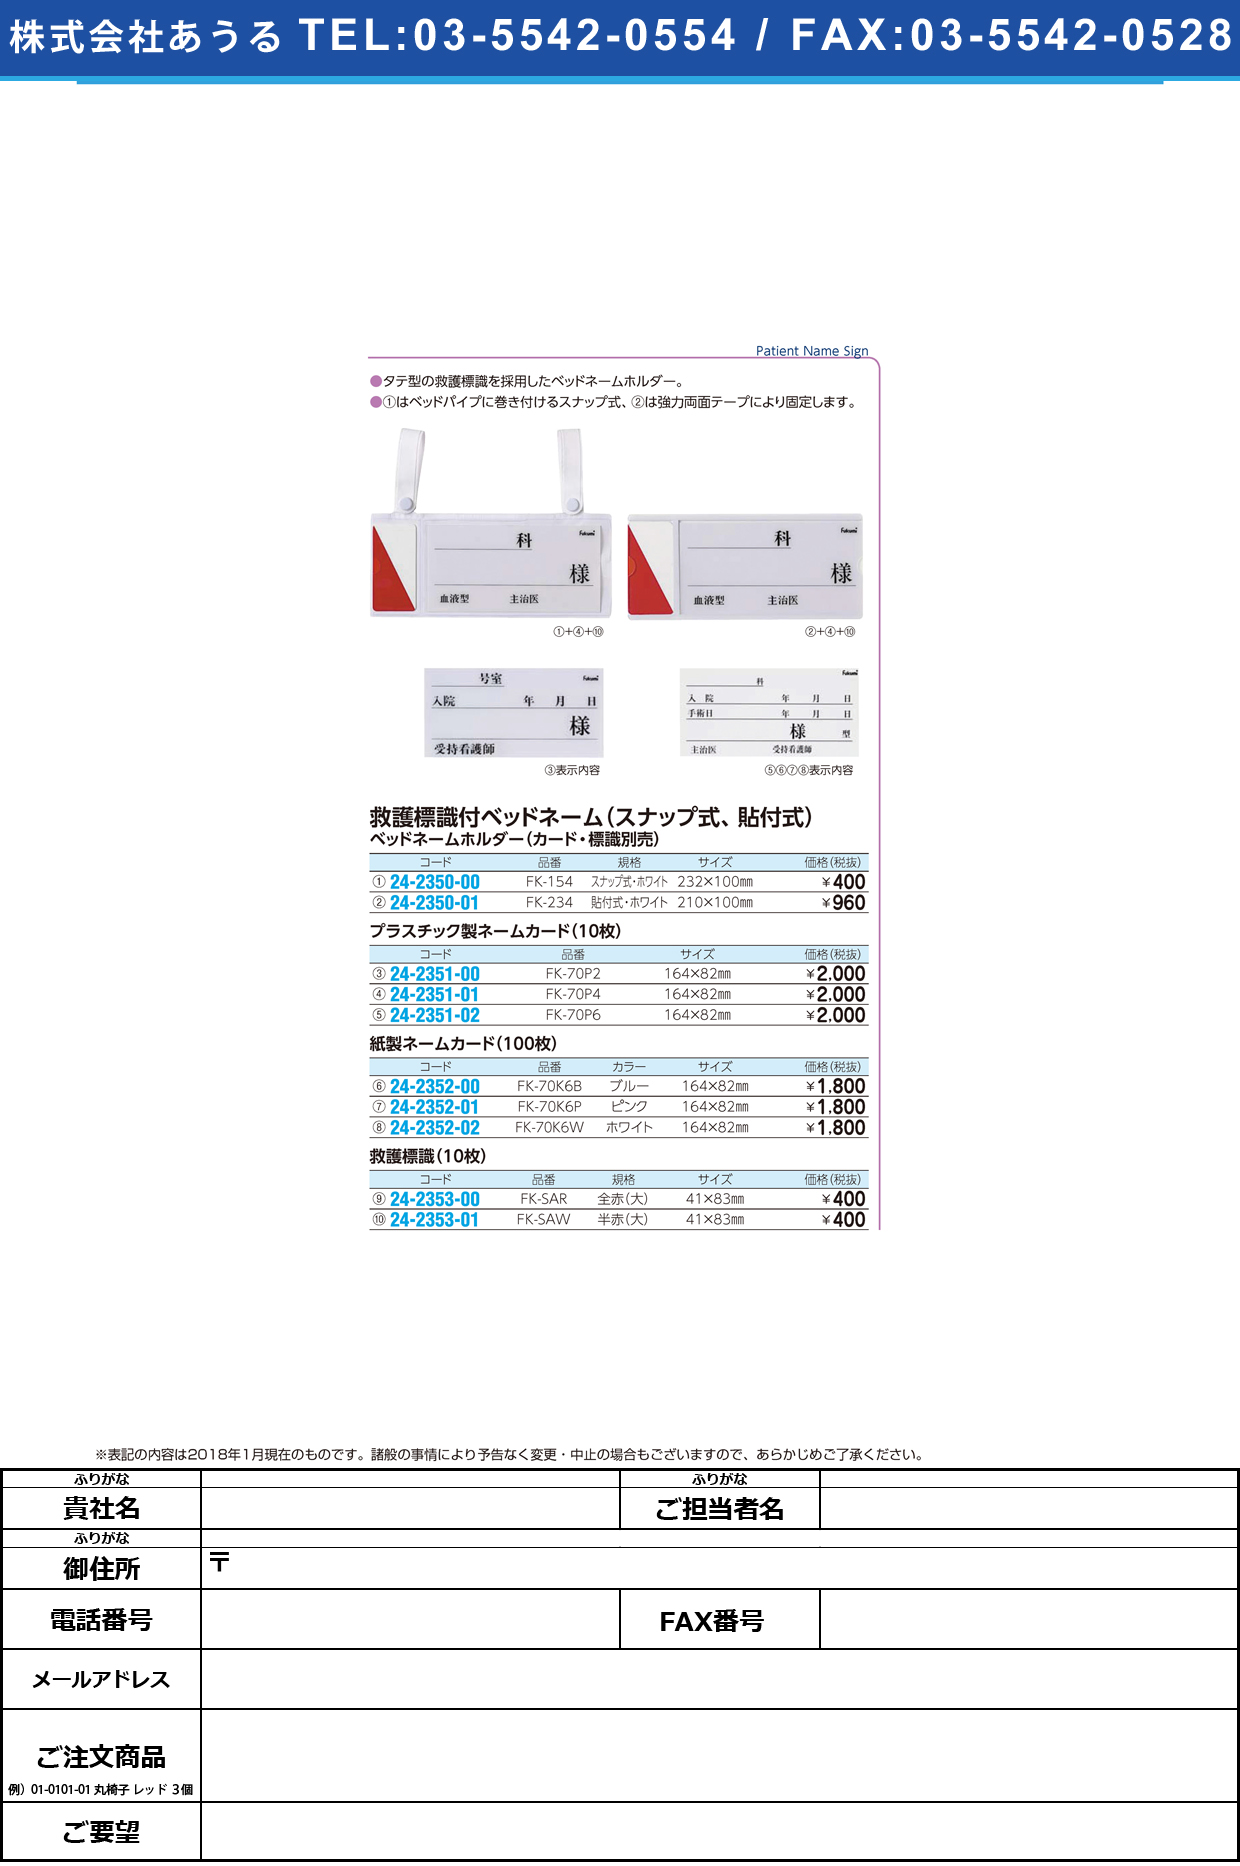 (24-2350-00)ベッドネームホルダー FK-154(ｽﾅｯﾌﾟｼｷ) ﾍﾞｯﾄﾞﾈｰﾑﾎﾙﾀﾞｰ【1枚単位】【2018年カタログ商品】